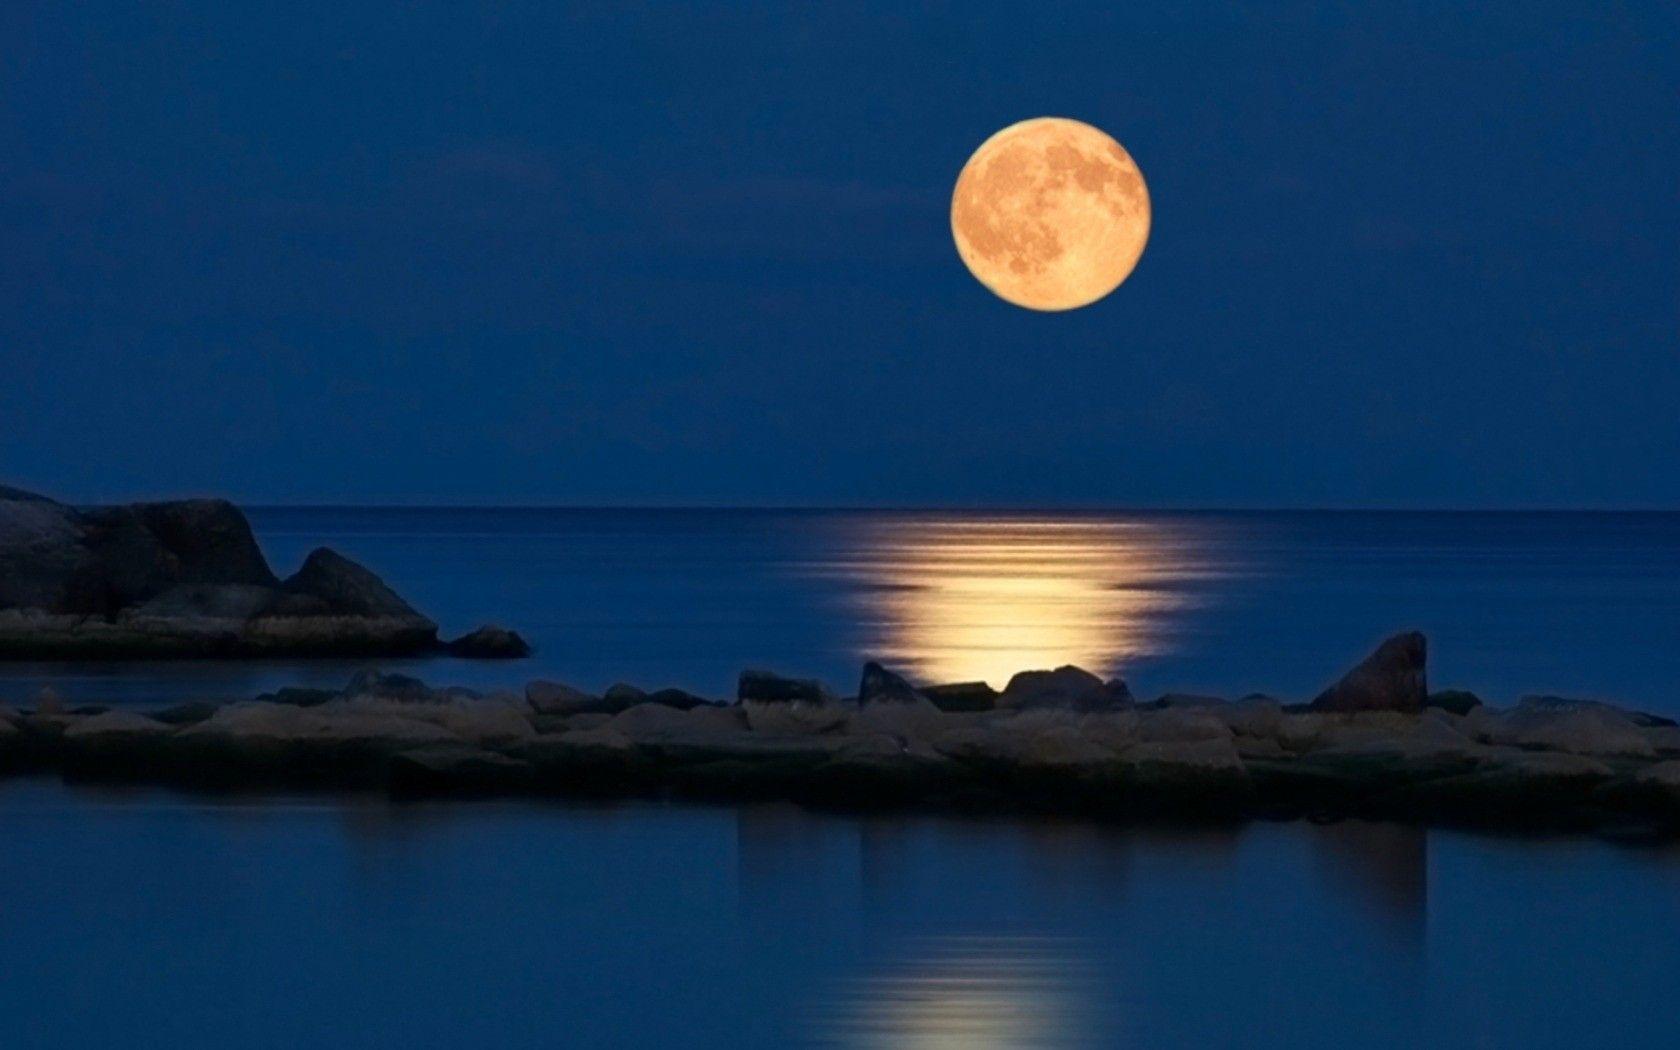 Ocean Night Bay Reflection Moonlight Sky Background Wallpaper